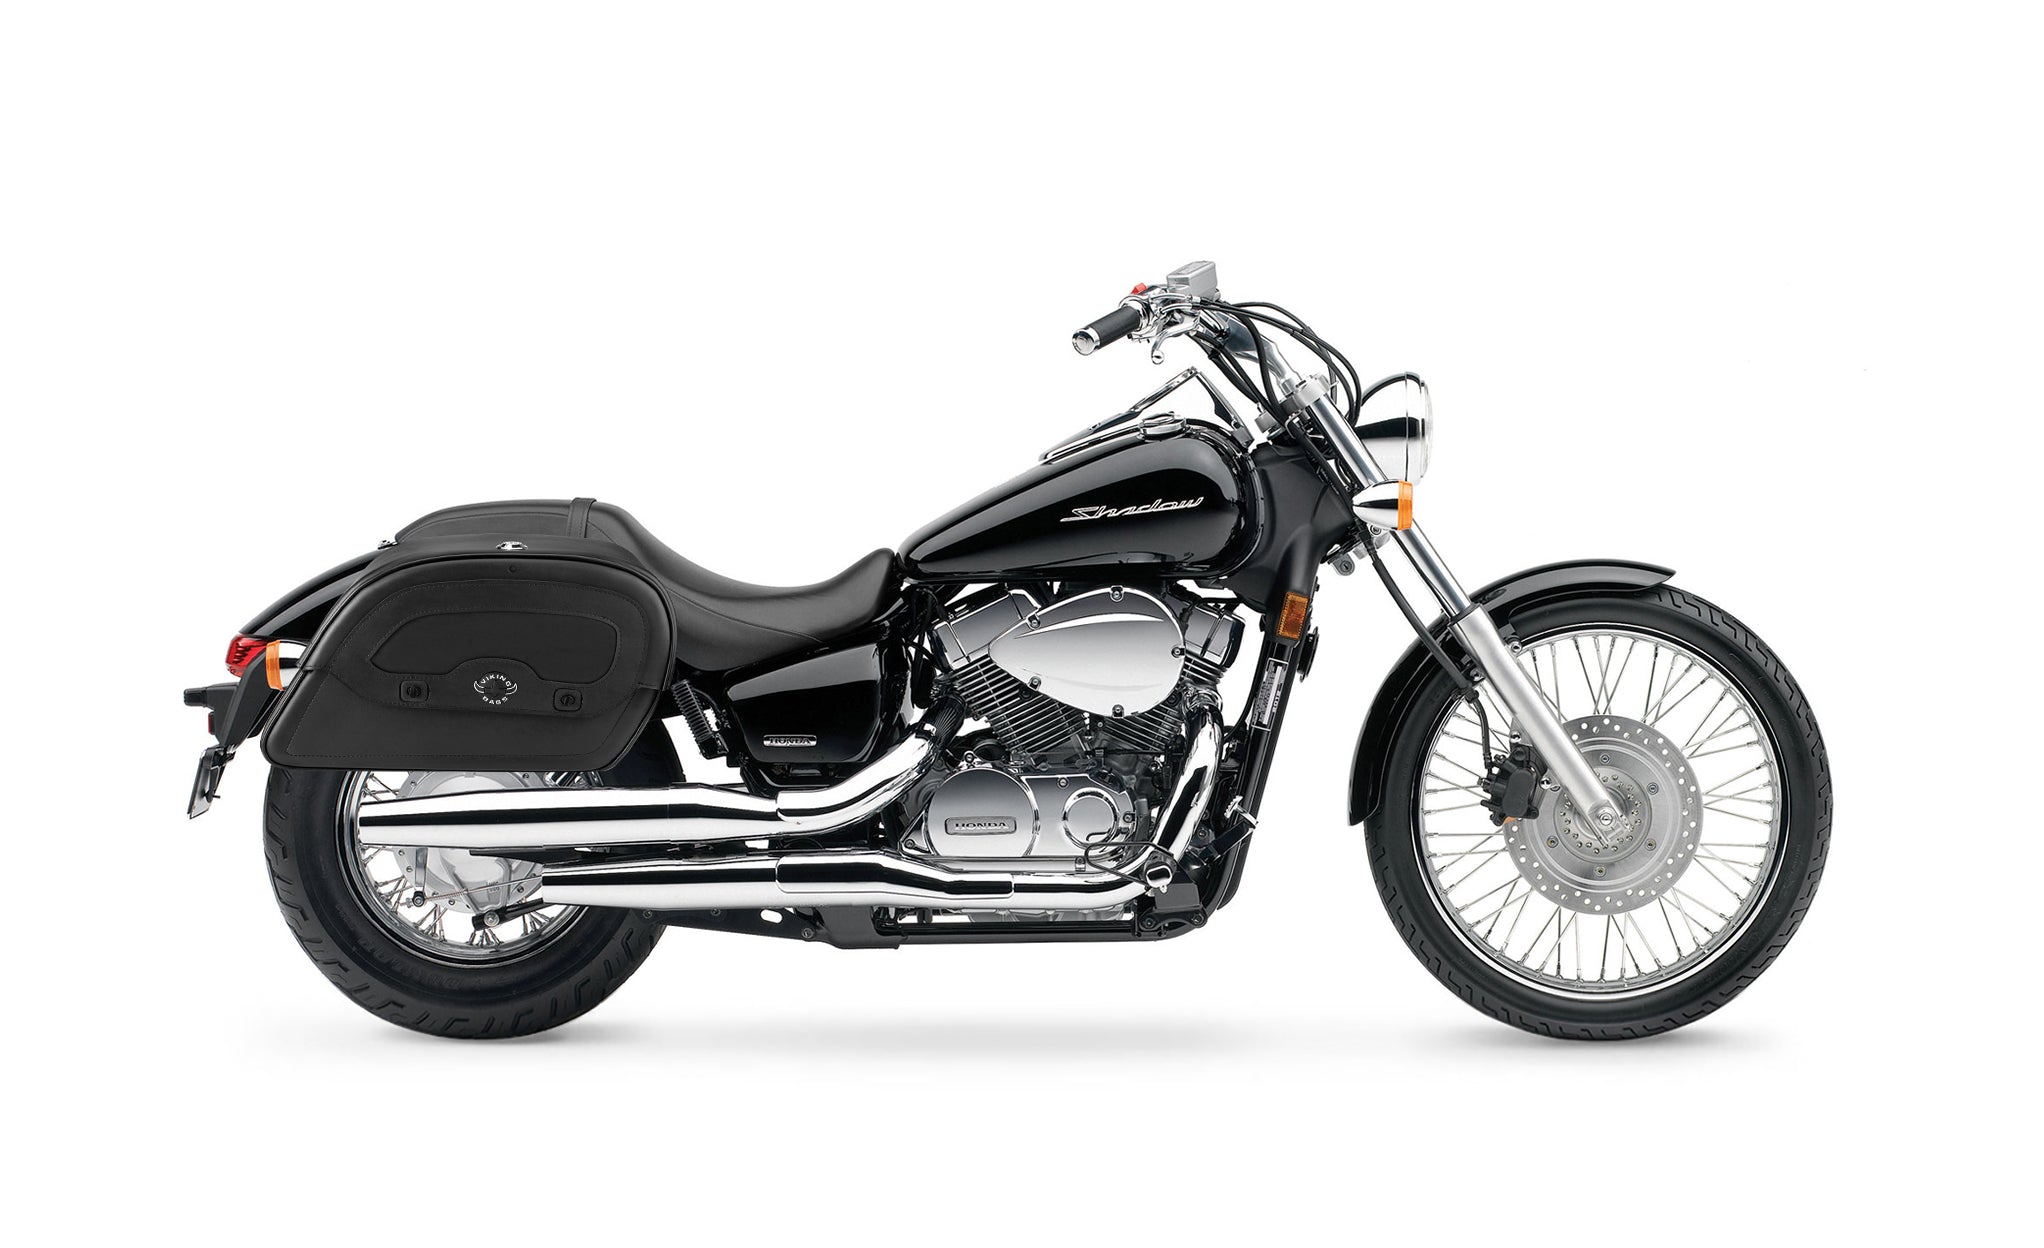 Viking Warrior Medium Honda Shadow 750 Spirit Incl C2 Leather Motorcycle Saddlebags on Bike Photo @expand